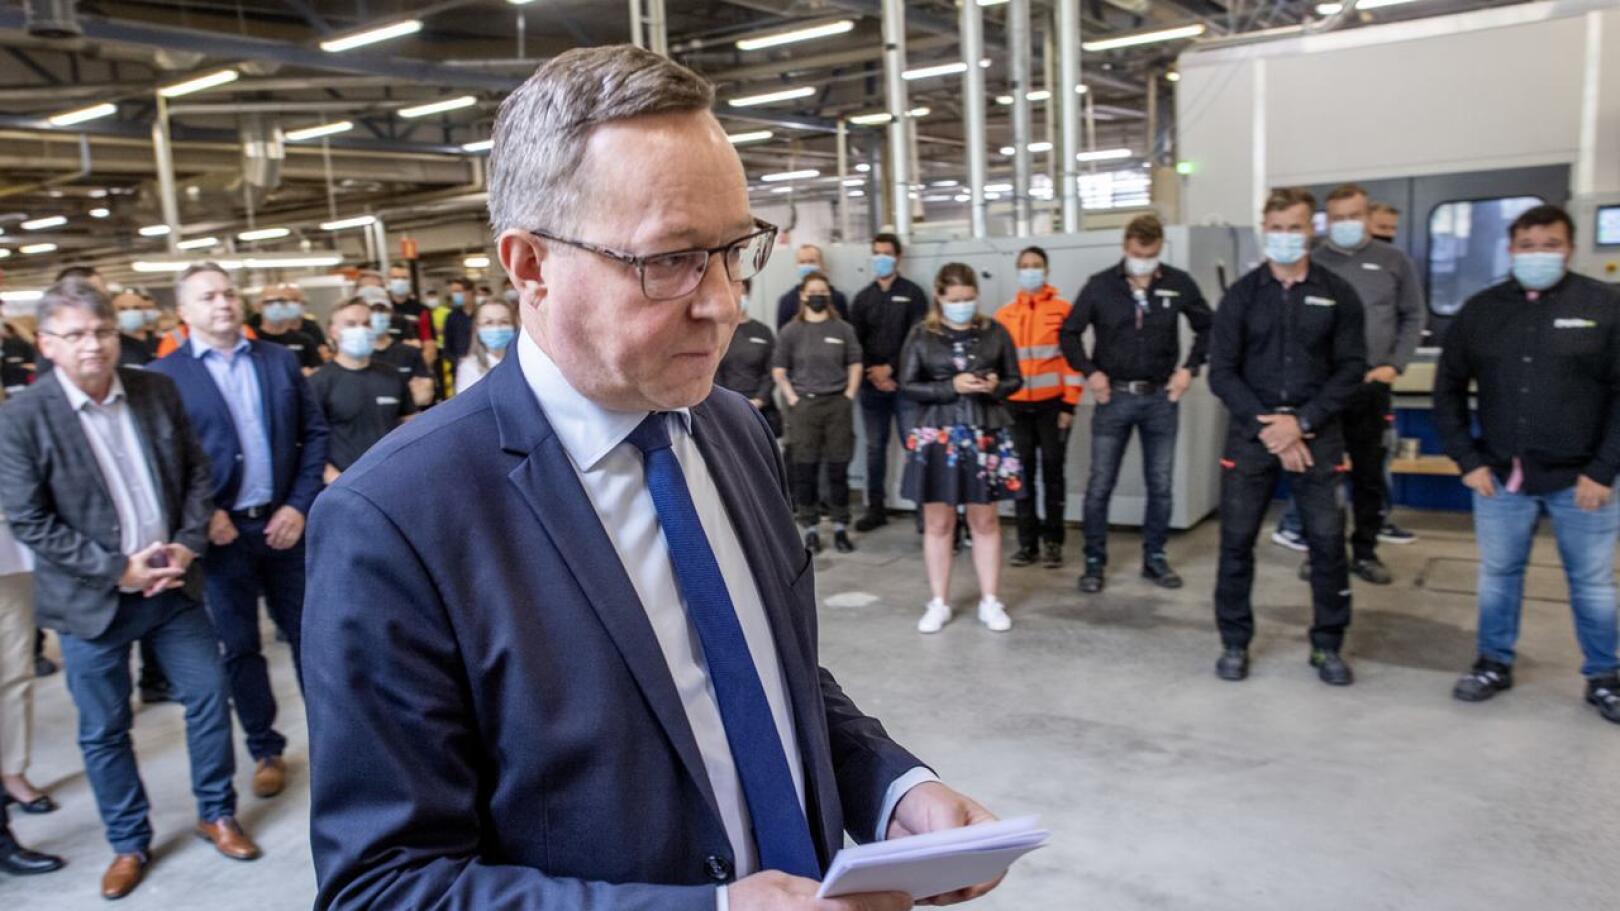 Elinkeinoministeri Mika Lintilä. Kuva on perjantailta, jolloin Lintilä vihki käyttöön uudistetun tuotantolinjan Pihla Groupin Kannuksen tehtaalla Eskolassa.